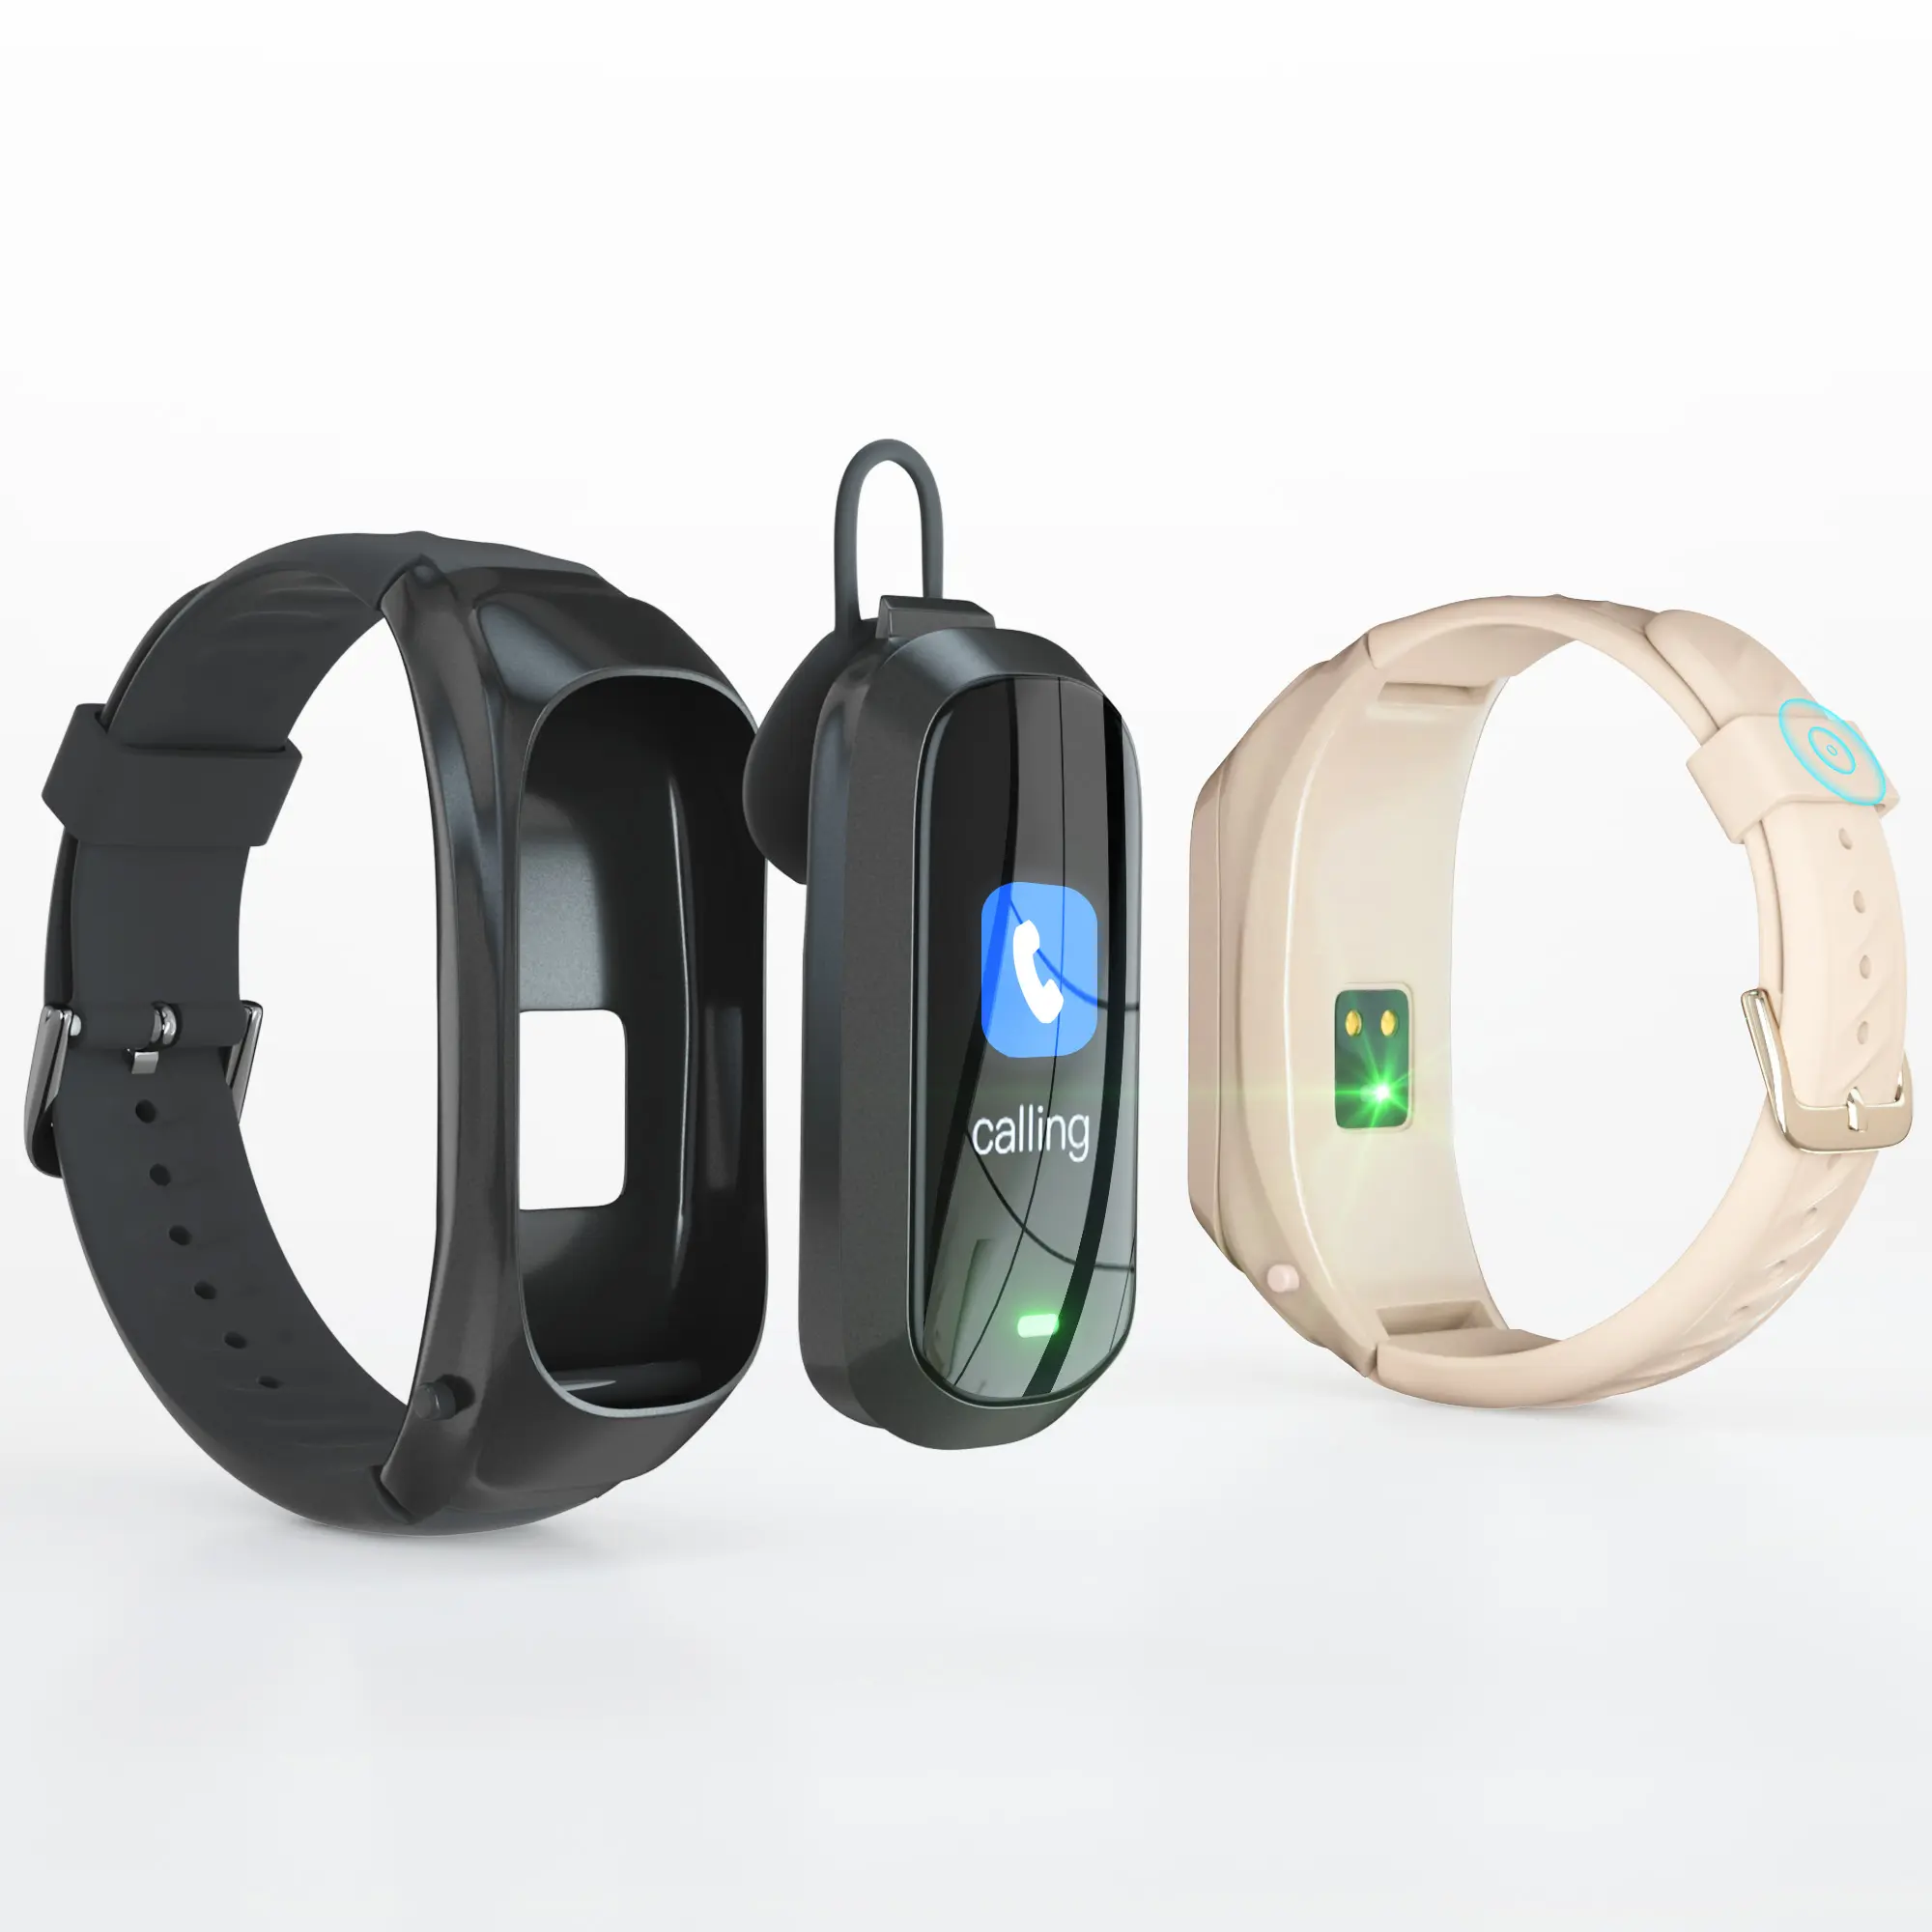 JAKCOM-reloj inteligente B6 para llamadas, nuevo producto, auriculares inalámbricos, compras en línea, electrónica, gran oferta